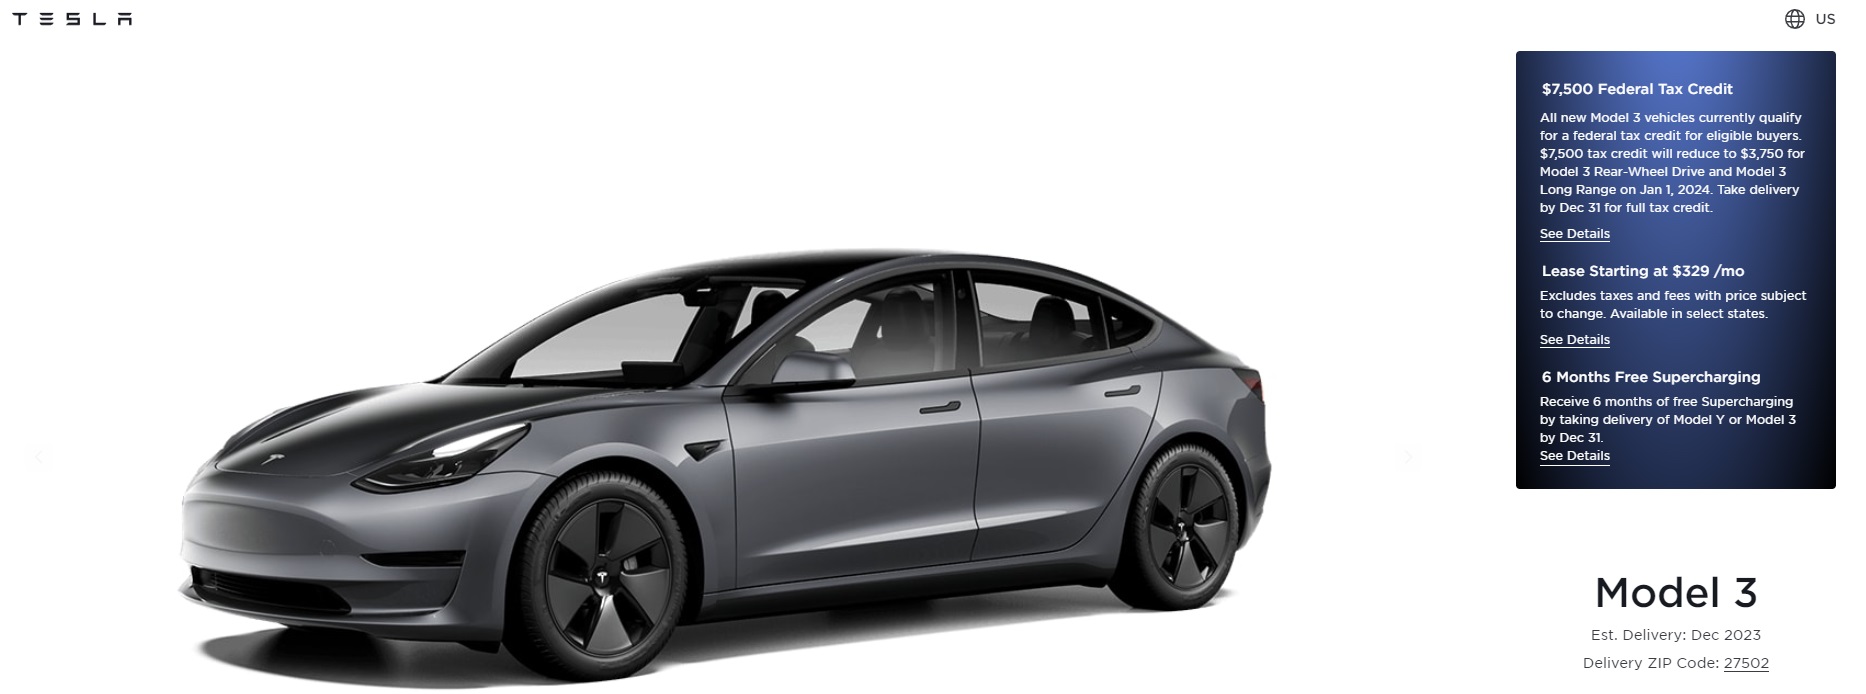 Tesla new Model 3 Tax Credit.jpg